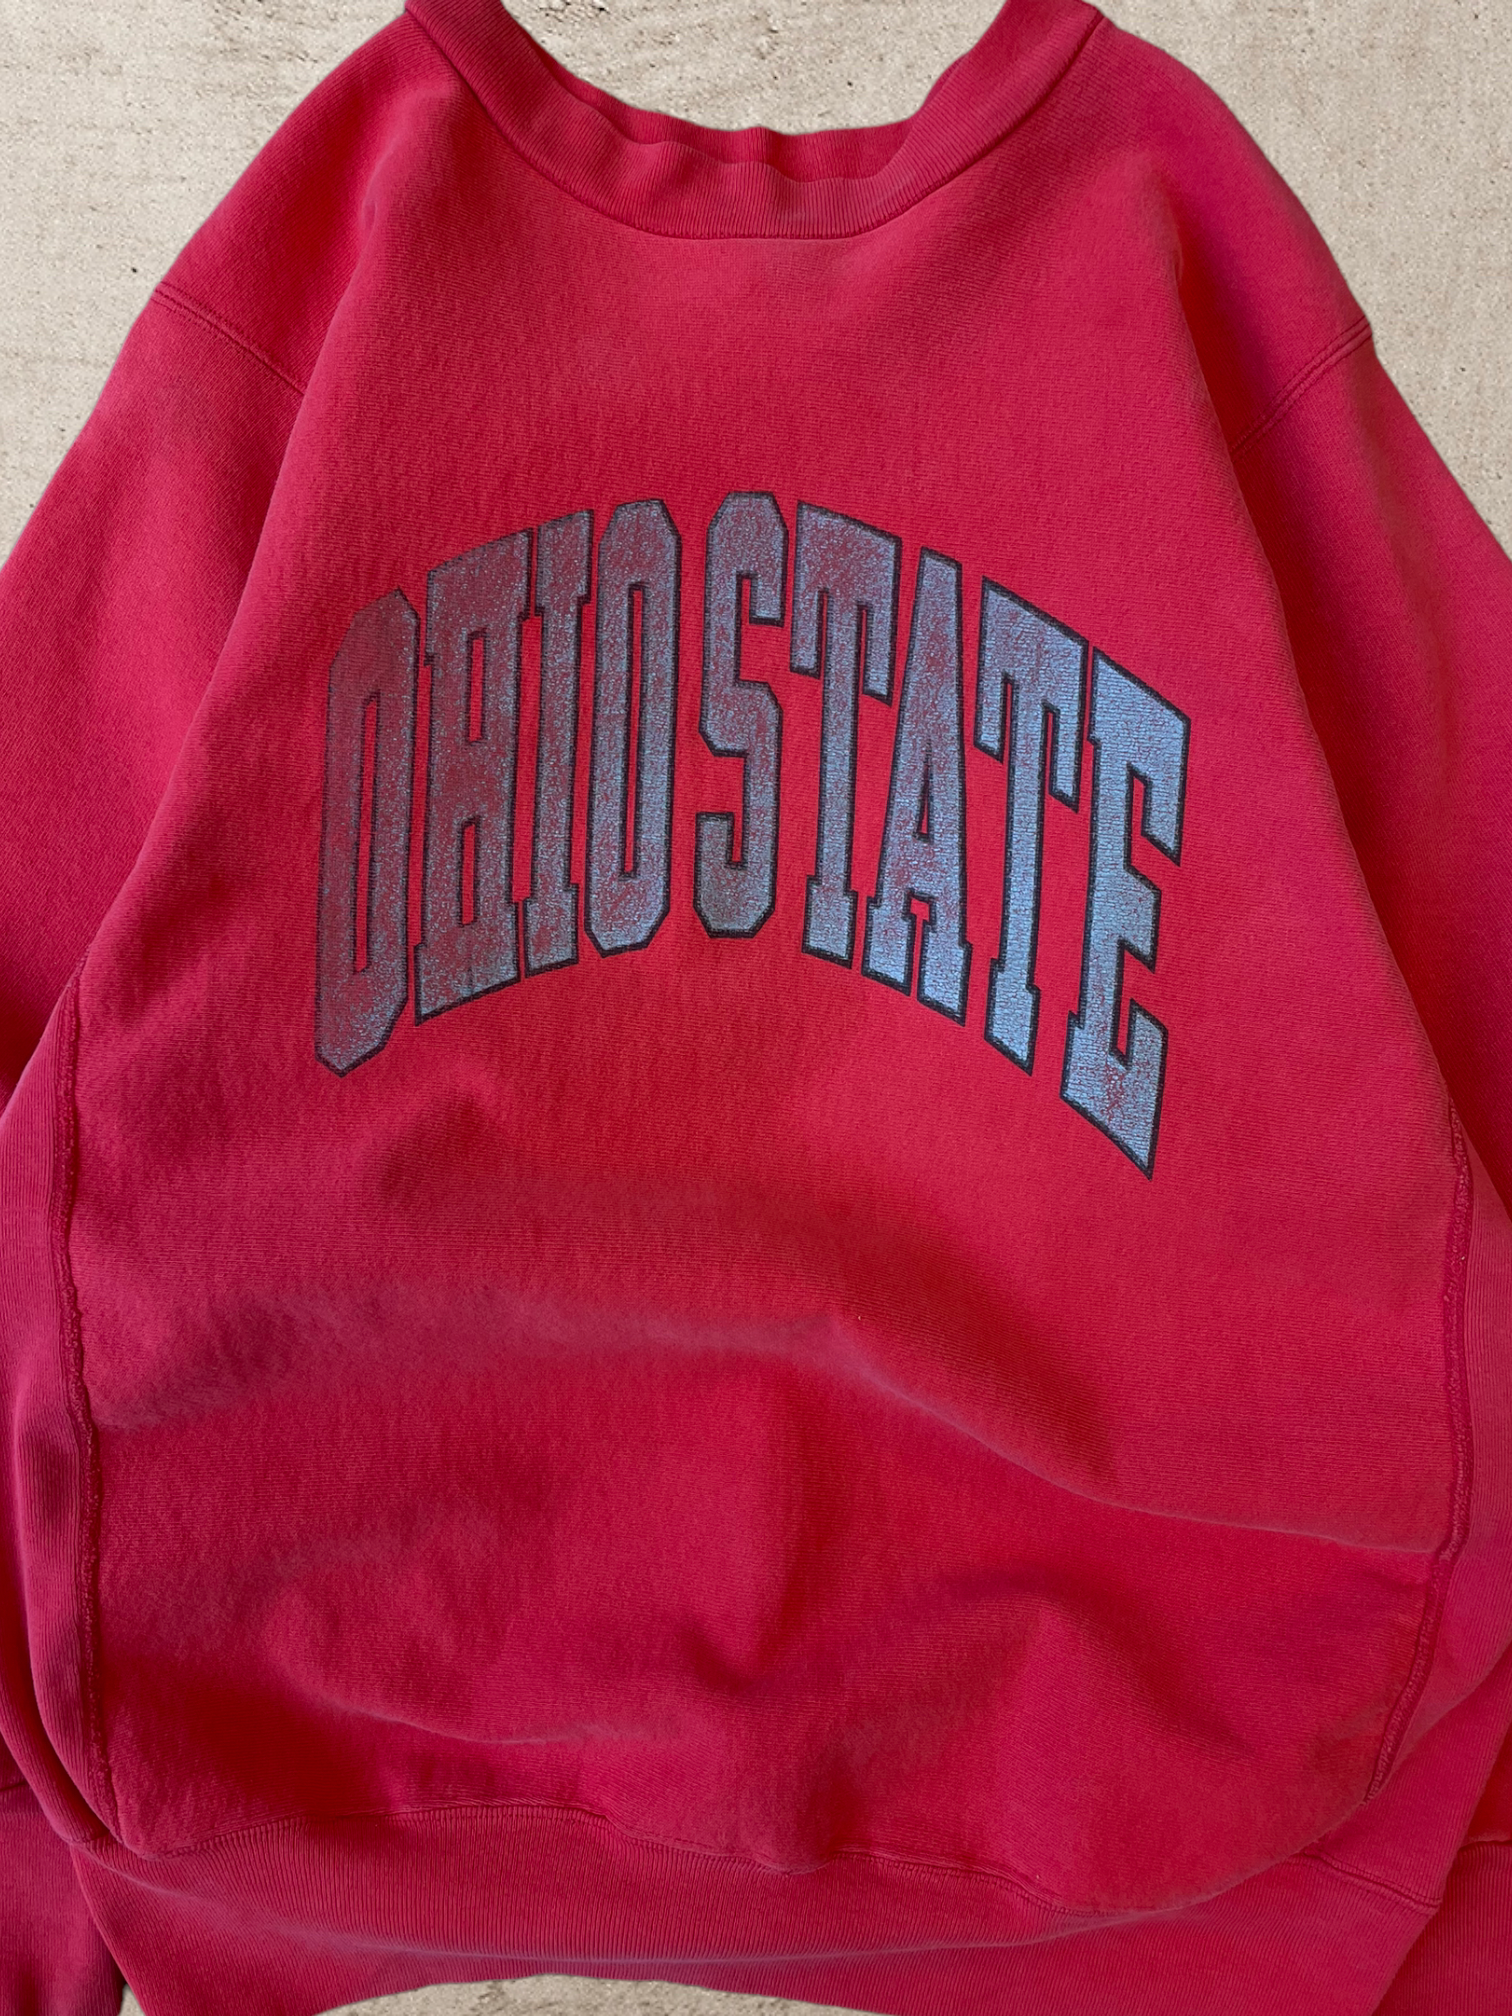 90s Ohio State University Crewneck - Large